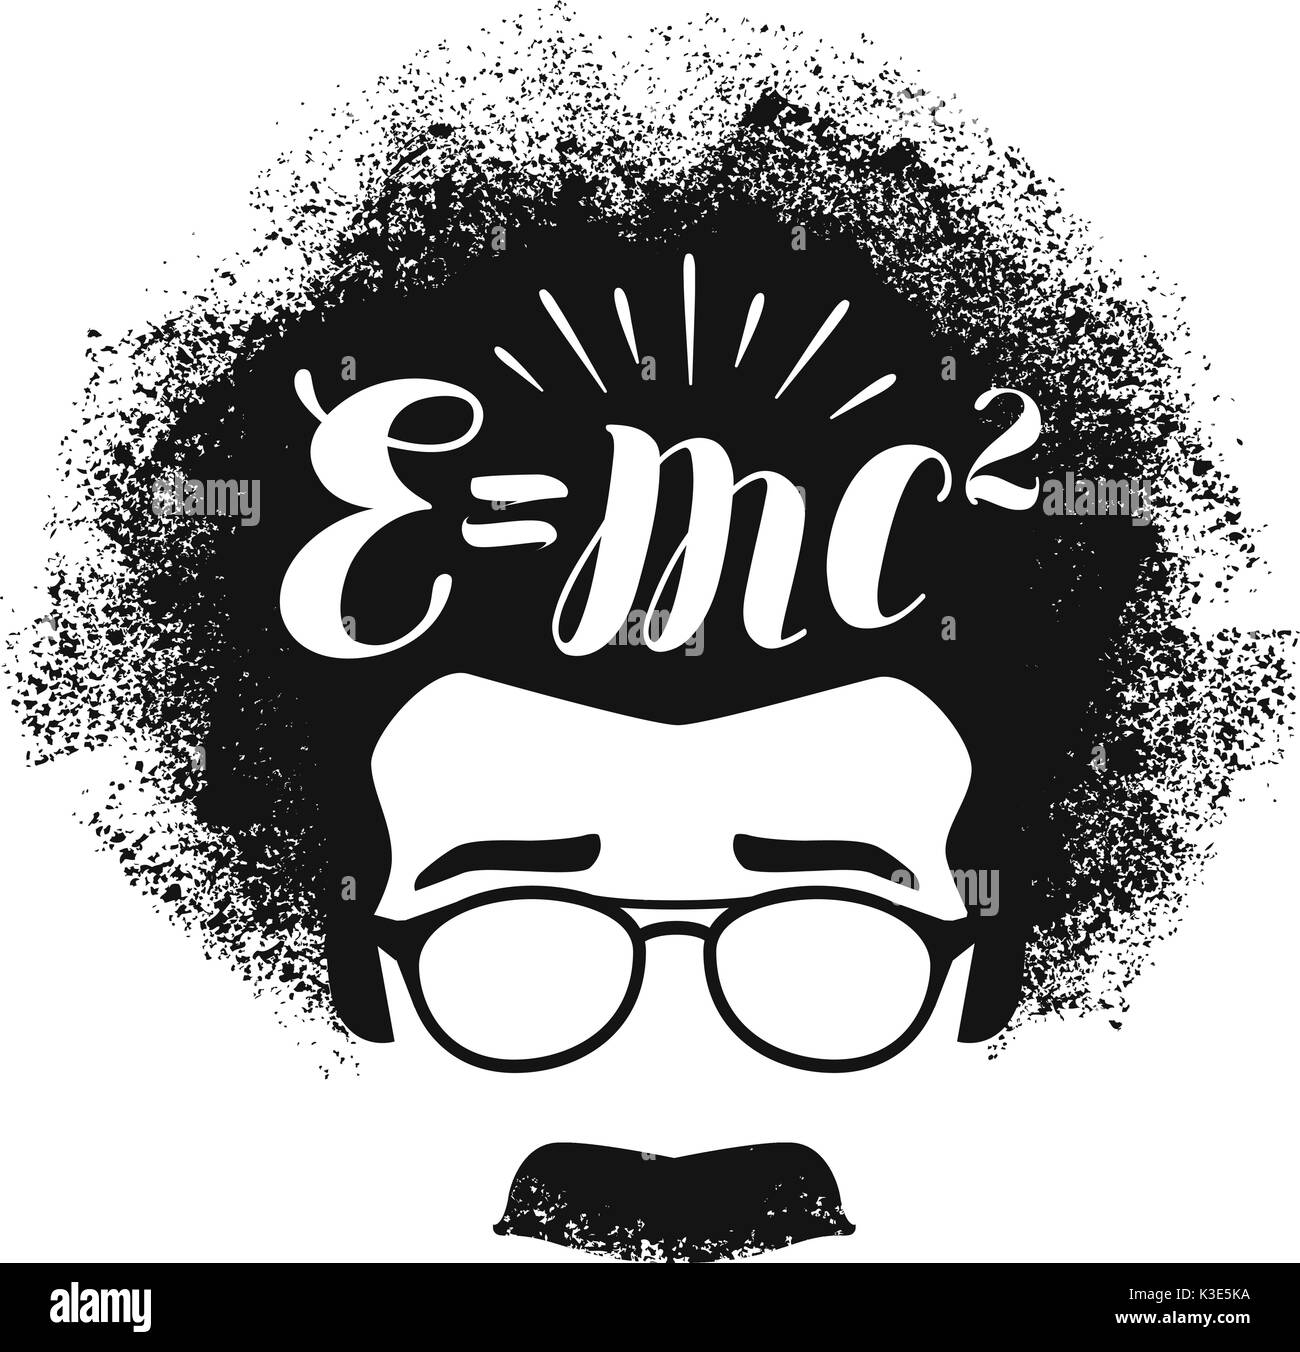 Portrait von Albert Einstein. Bildung, Wissenschaft, Schule Konzept. Schriftzug Vector Illustration Stock Vektor